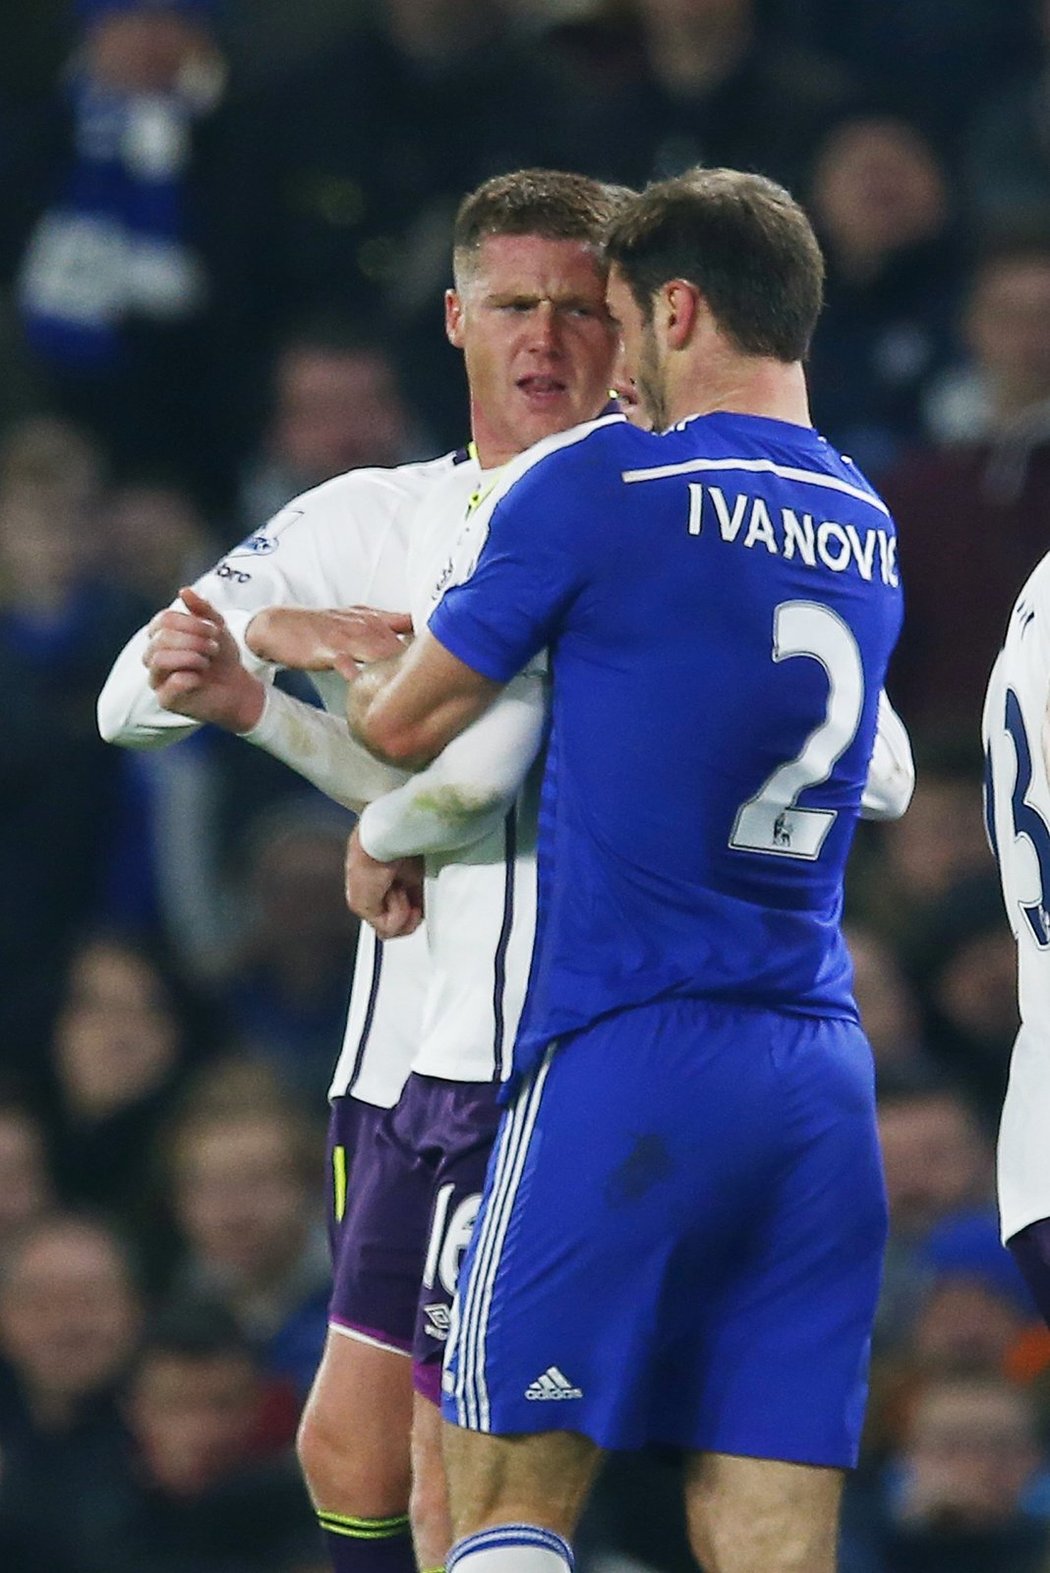 Srbský obránce Chelsea Branislav Ivanovič měl údajně v závěru ligového zápasu s Evertonem kousnout během strkanice soupeře.